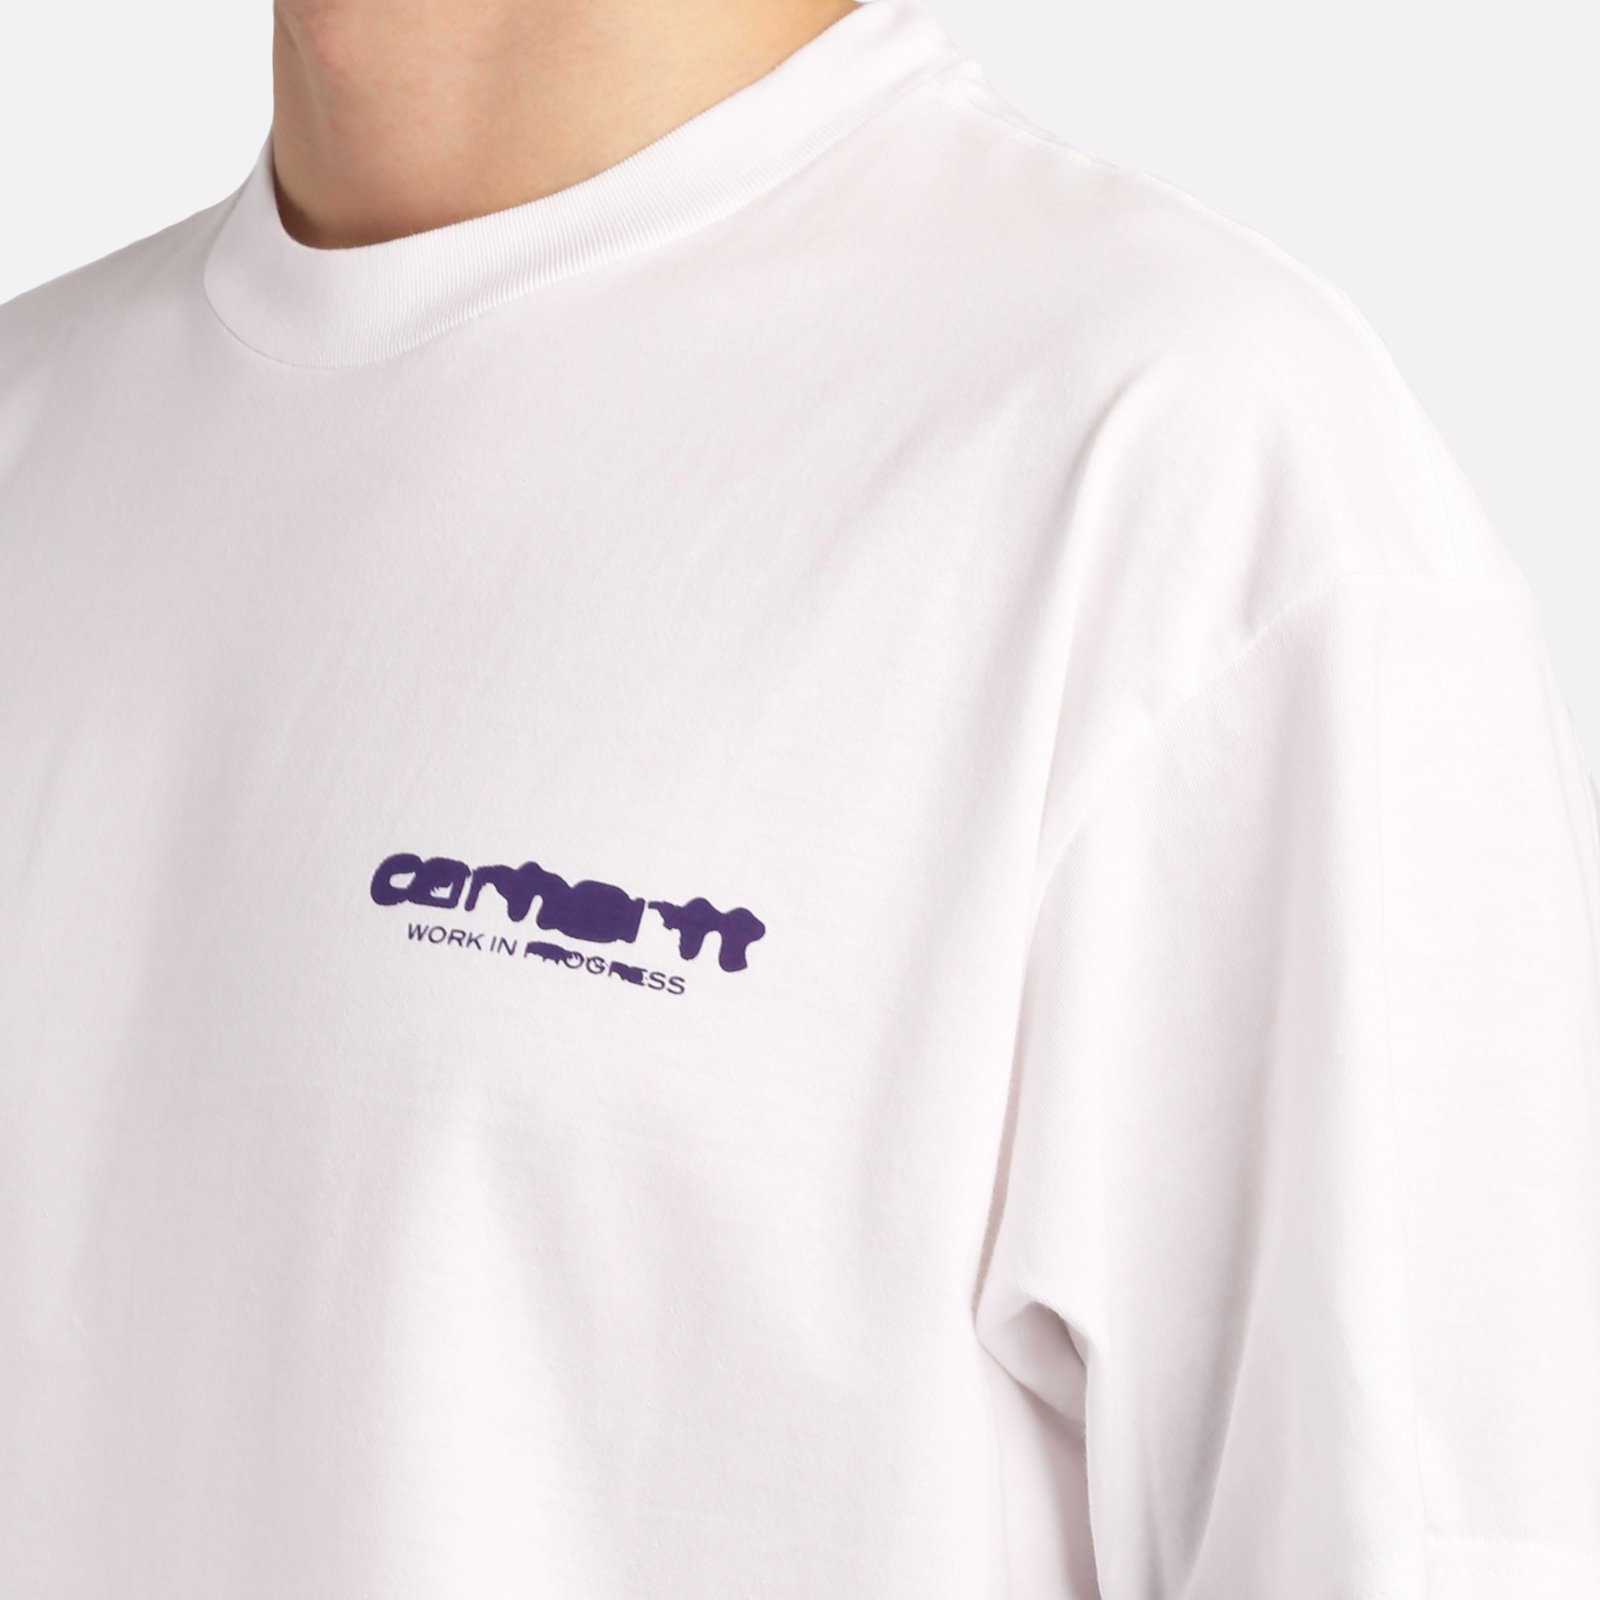 мужская футболка Carhartt WIP S/S Ink Bleed T-Shirt  (I032878-white/tyrian)  - цена, описание, фото 4